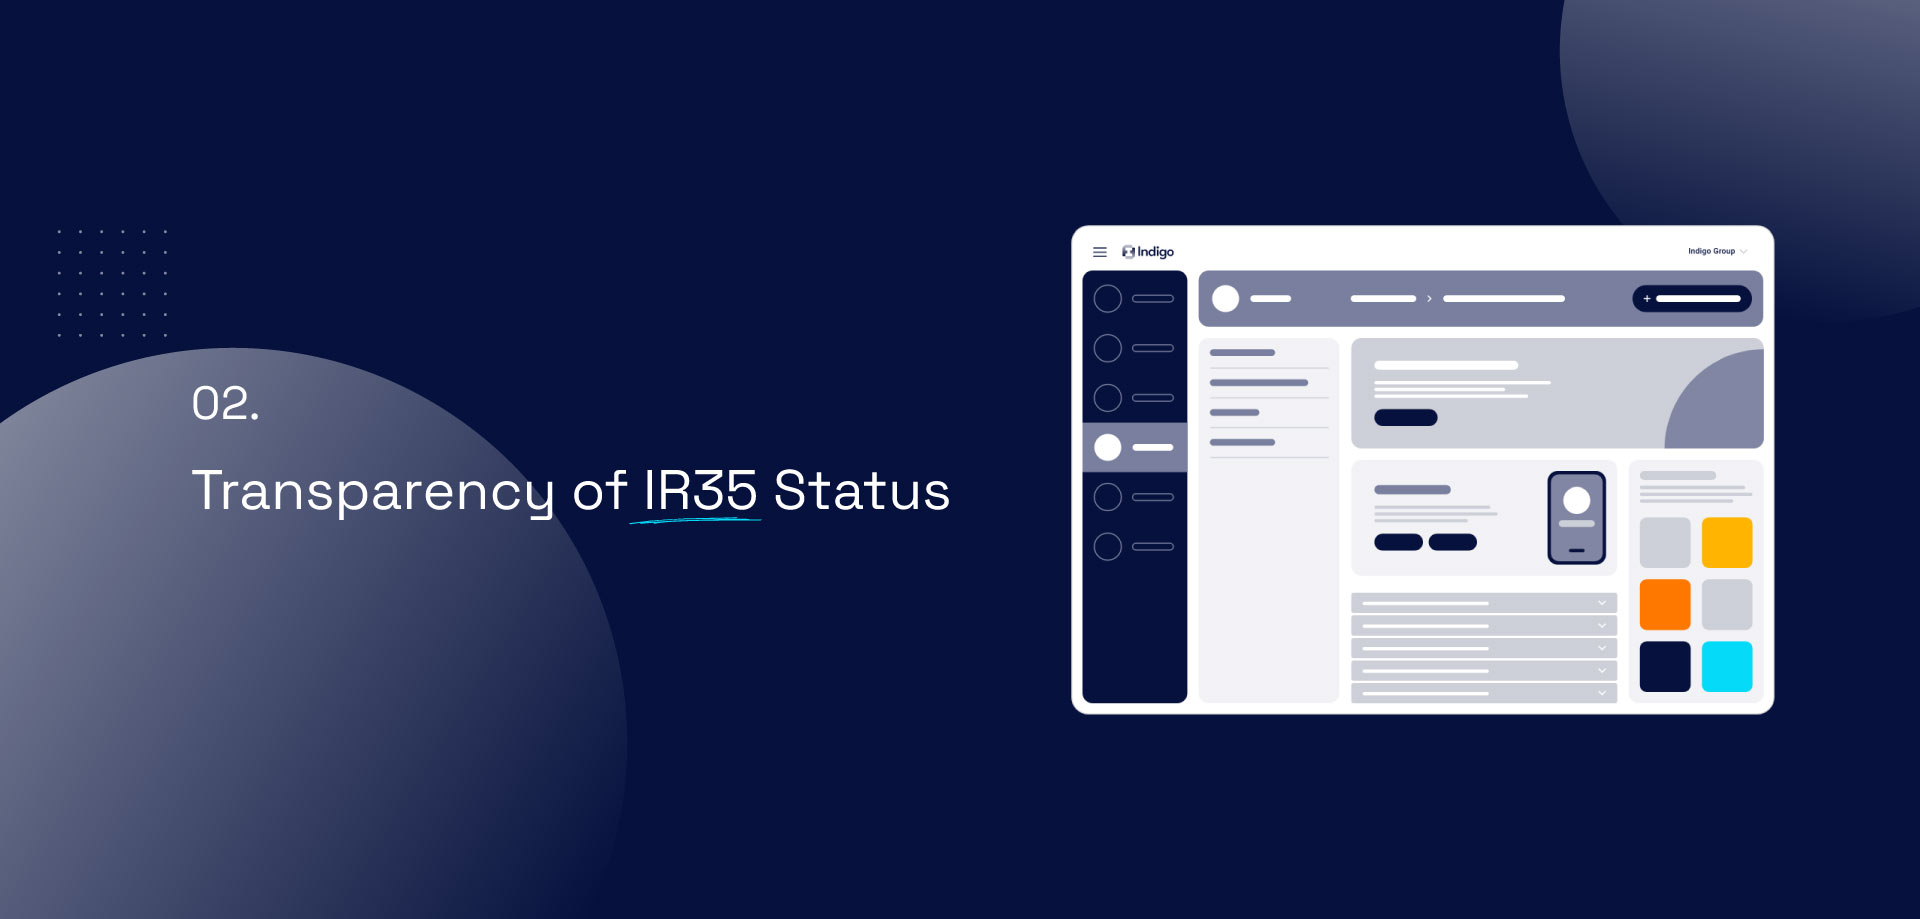 02. Transparency of IR35 Status